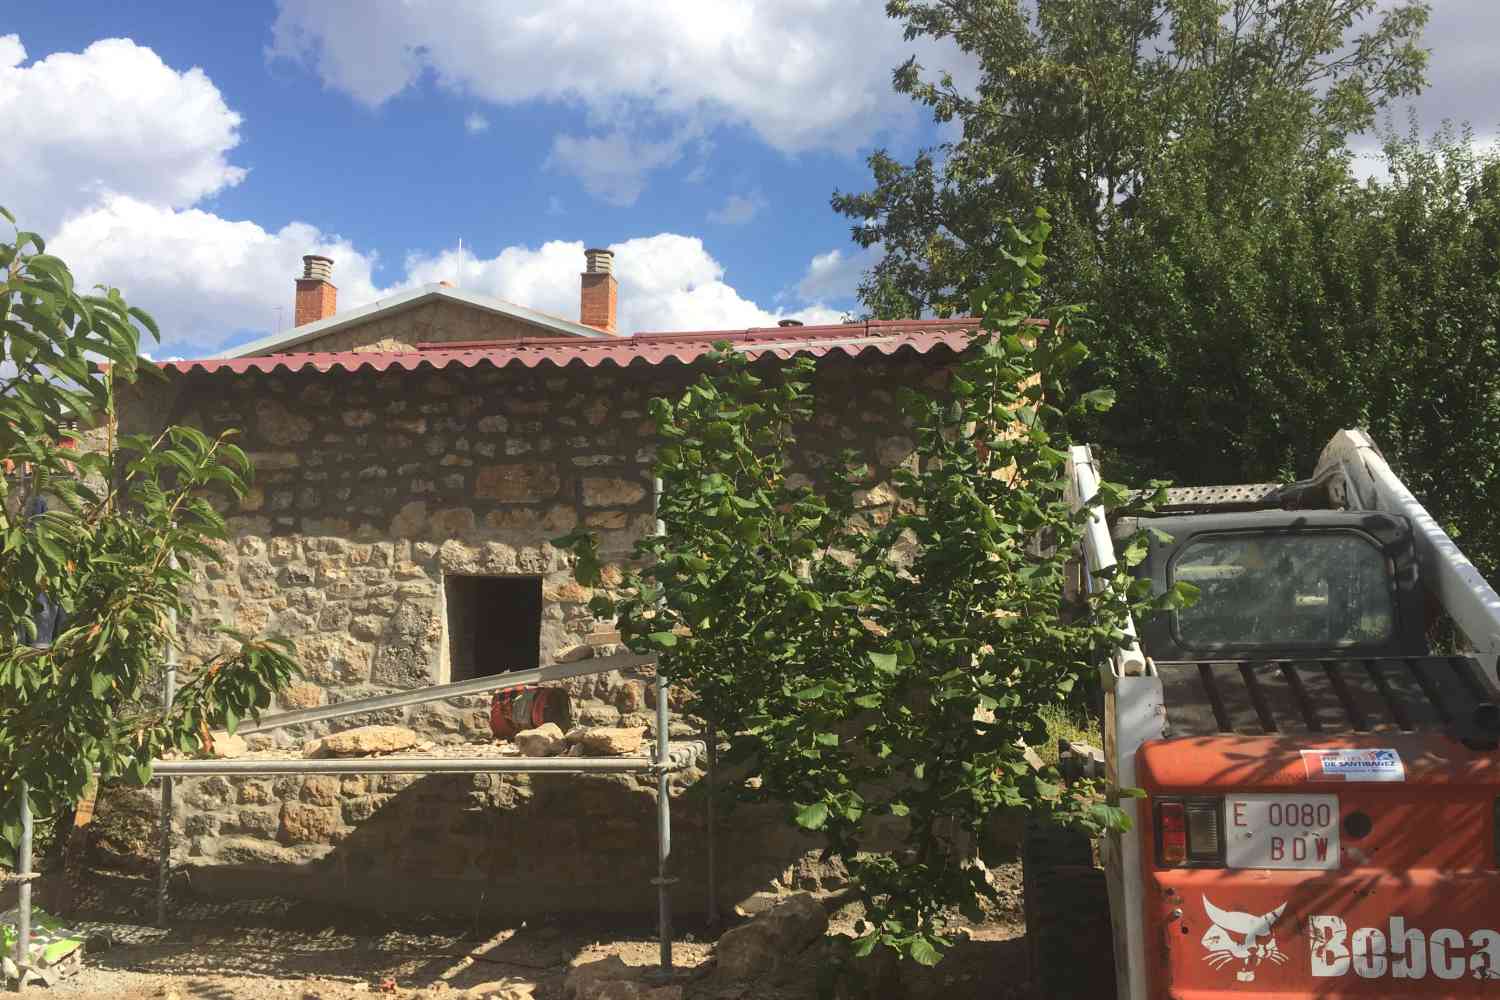 Rehabilitación de fachada de piedra en Huérmeces, Burgos, terminada